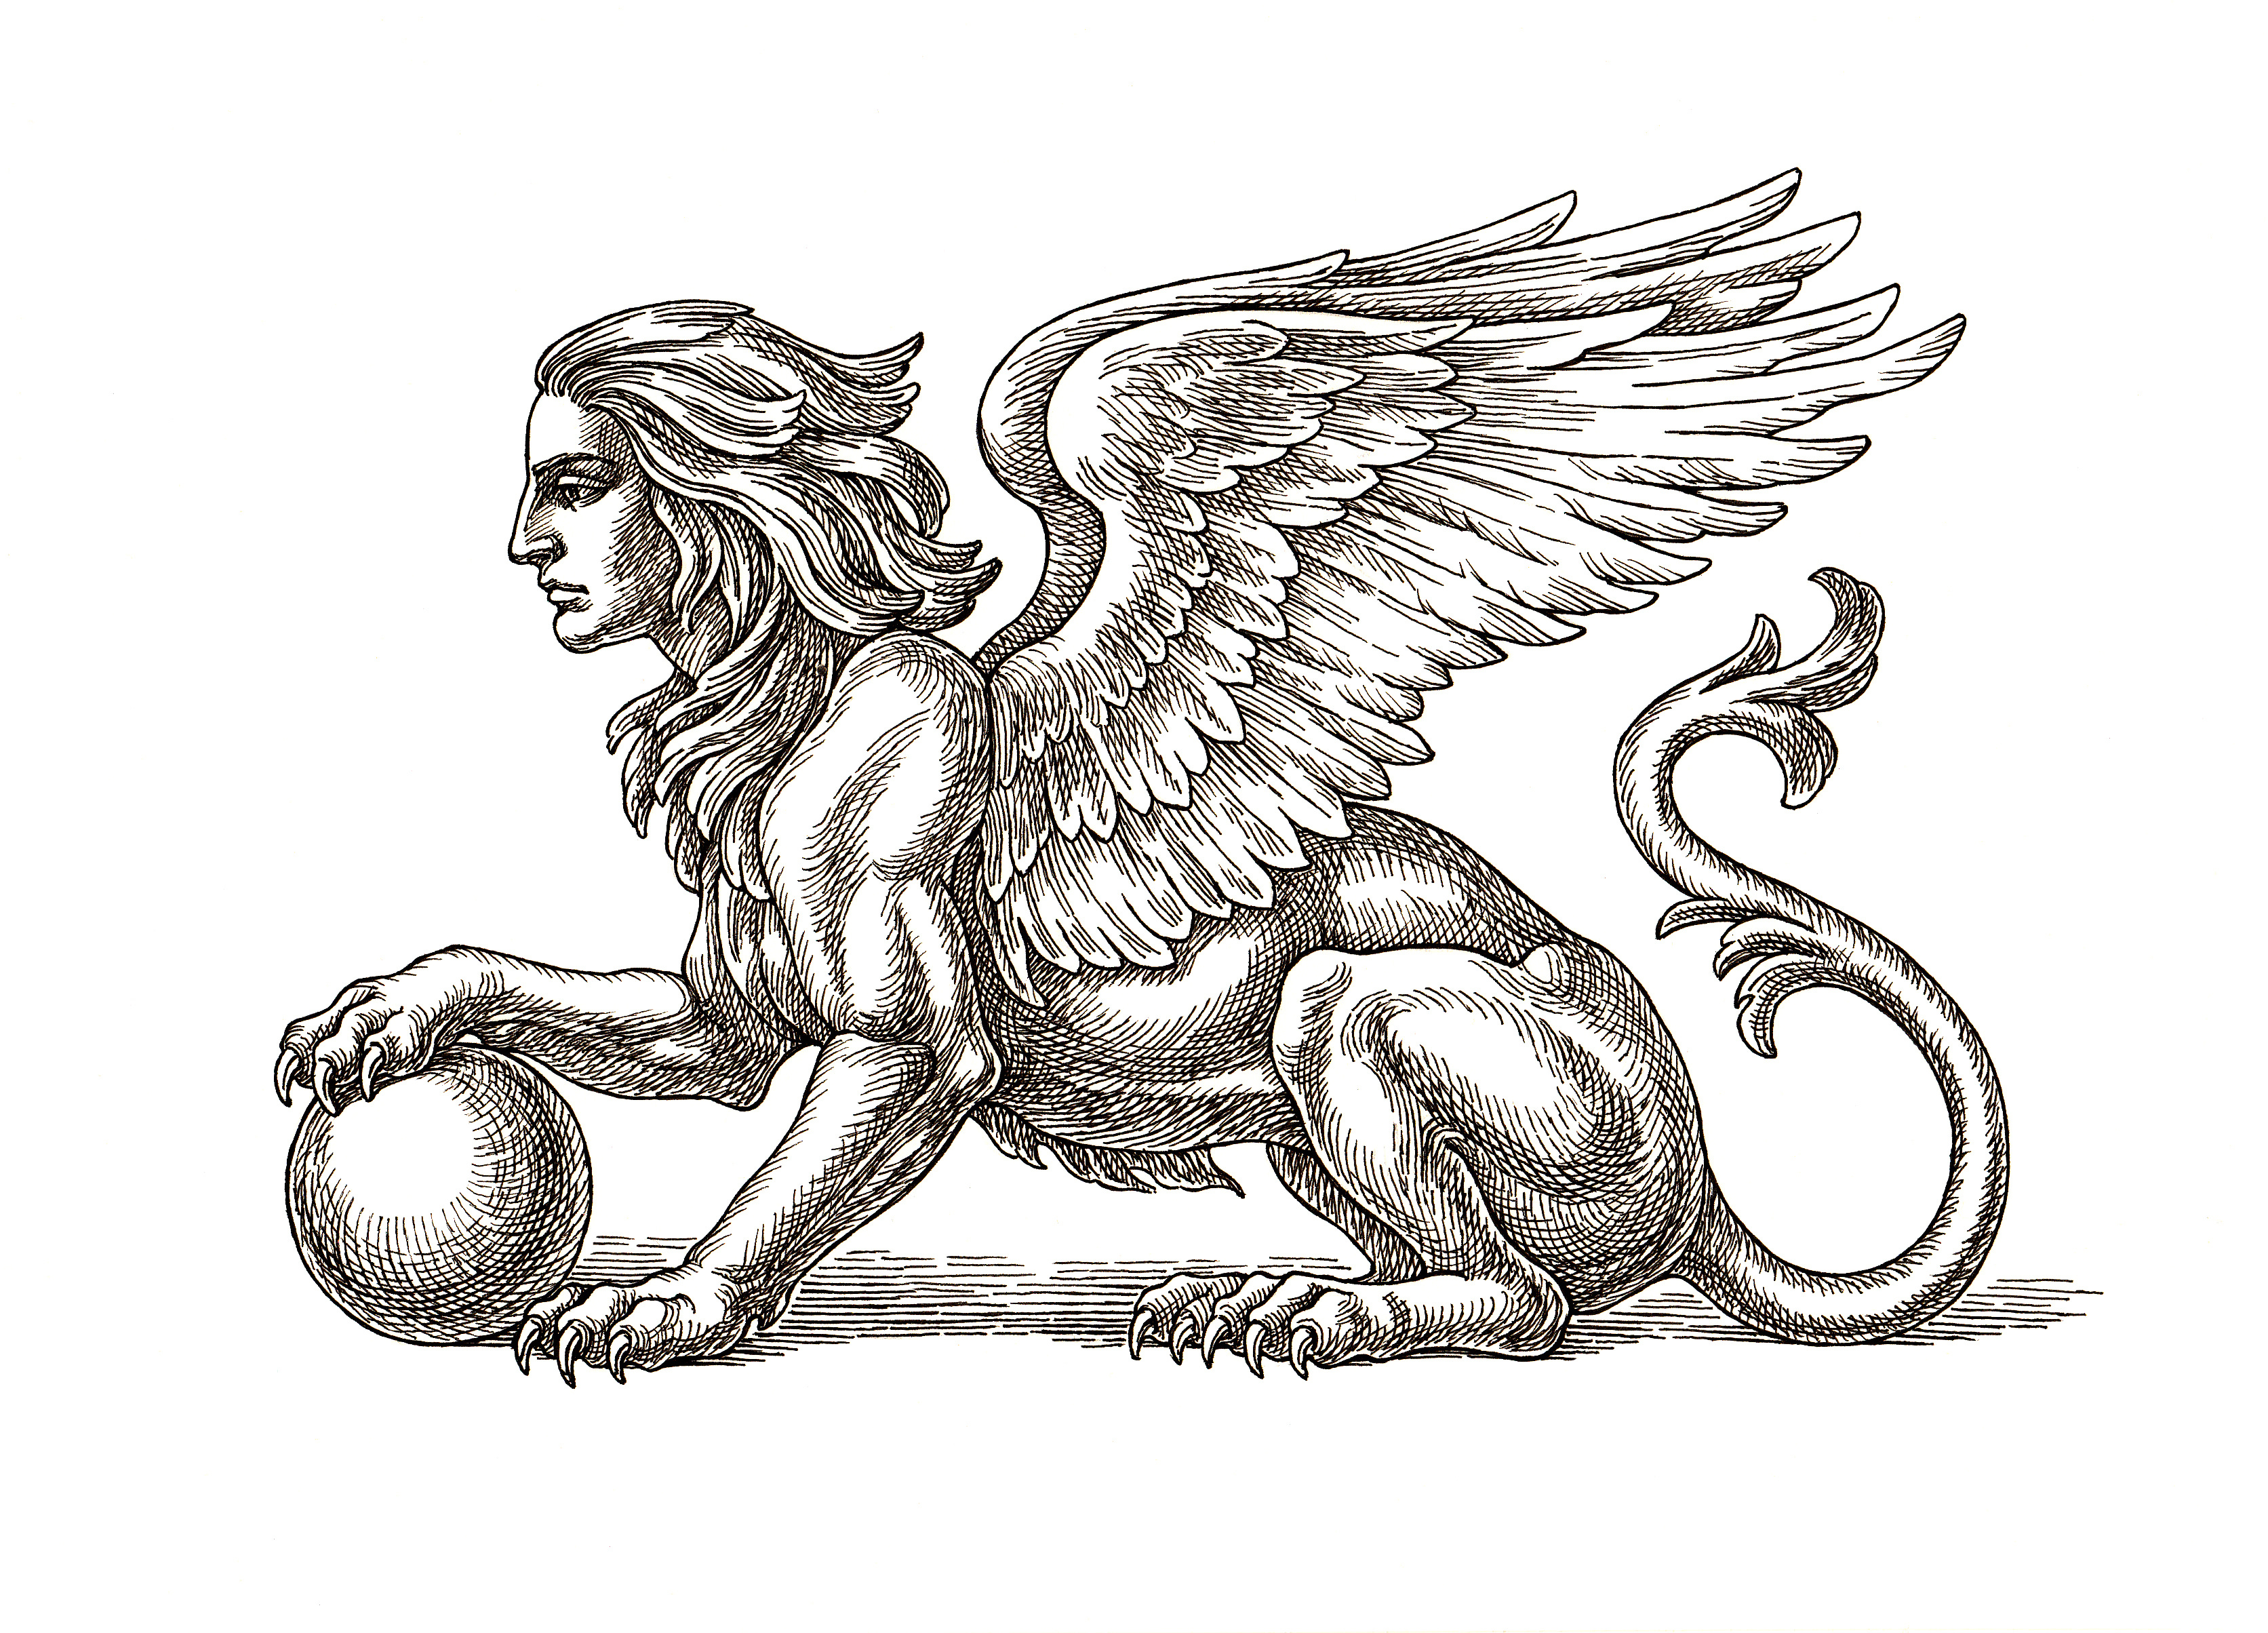 Original Tusche und Federzeichnung, geflügelte Sphinx auf weißem Hintergrund.